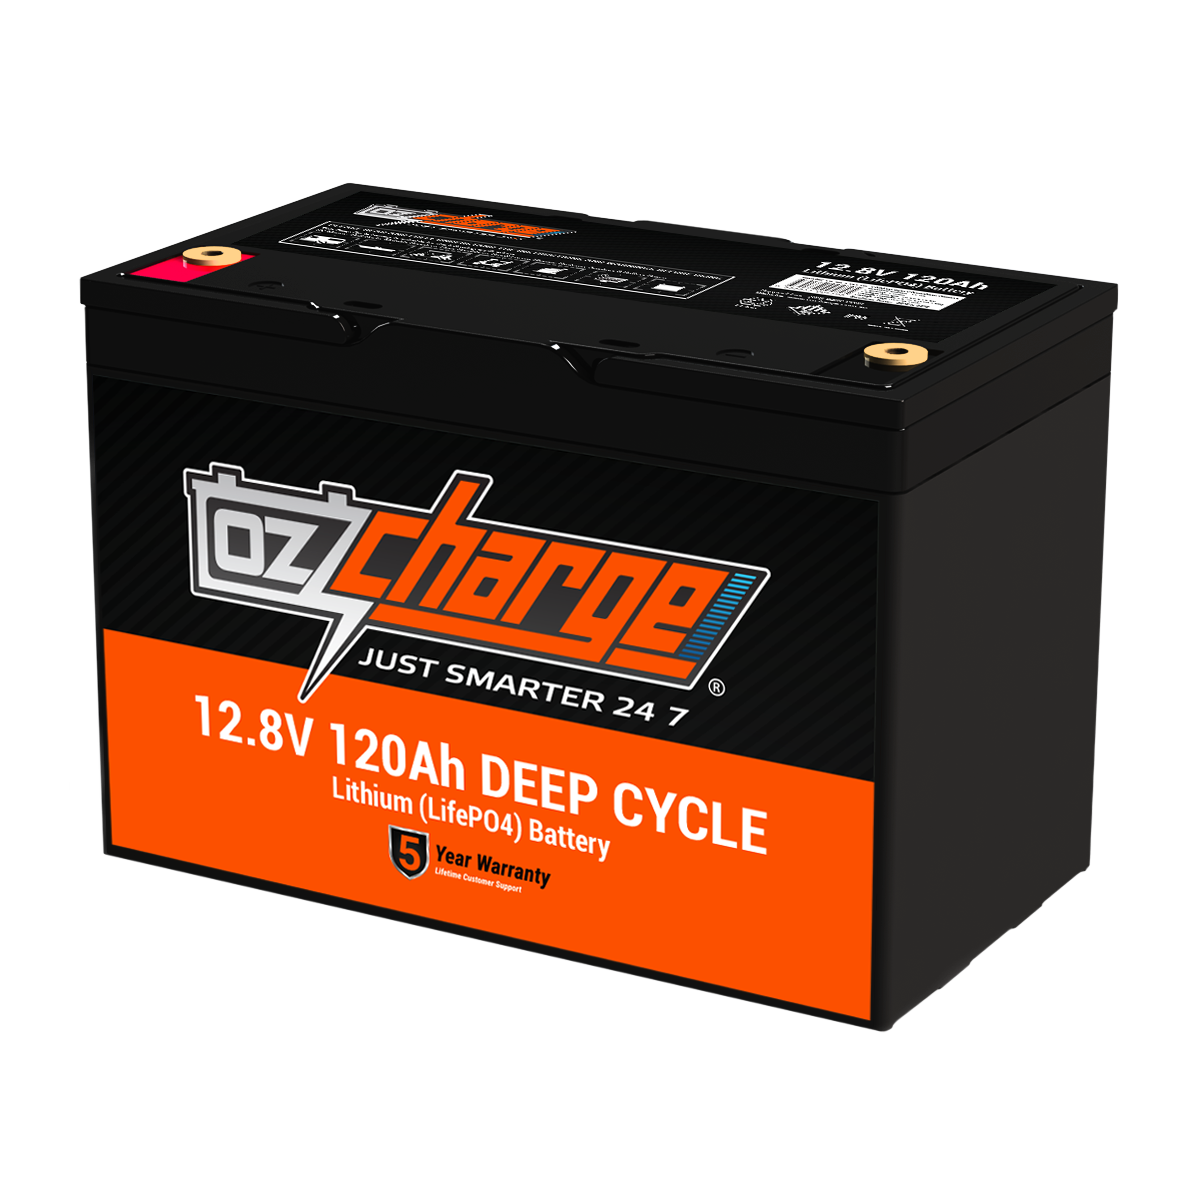 12V 120Ah Lithium LifePO4 Deep Cycle Battery